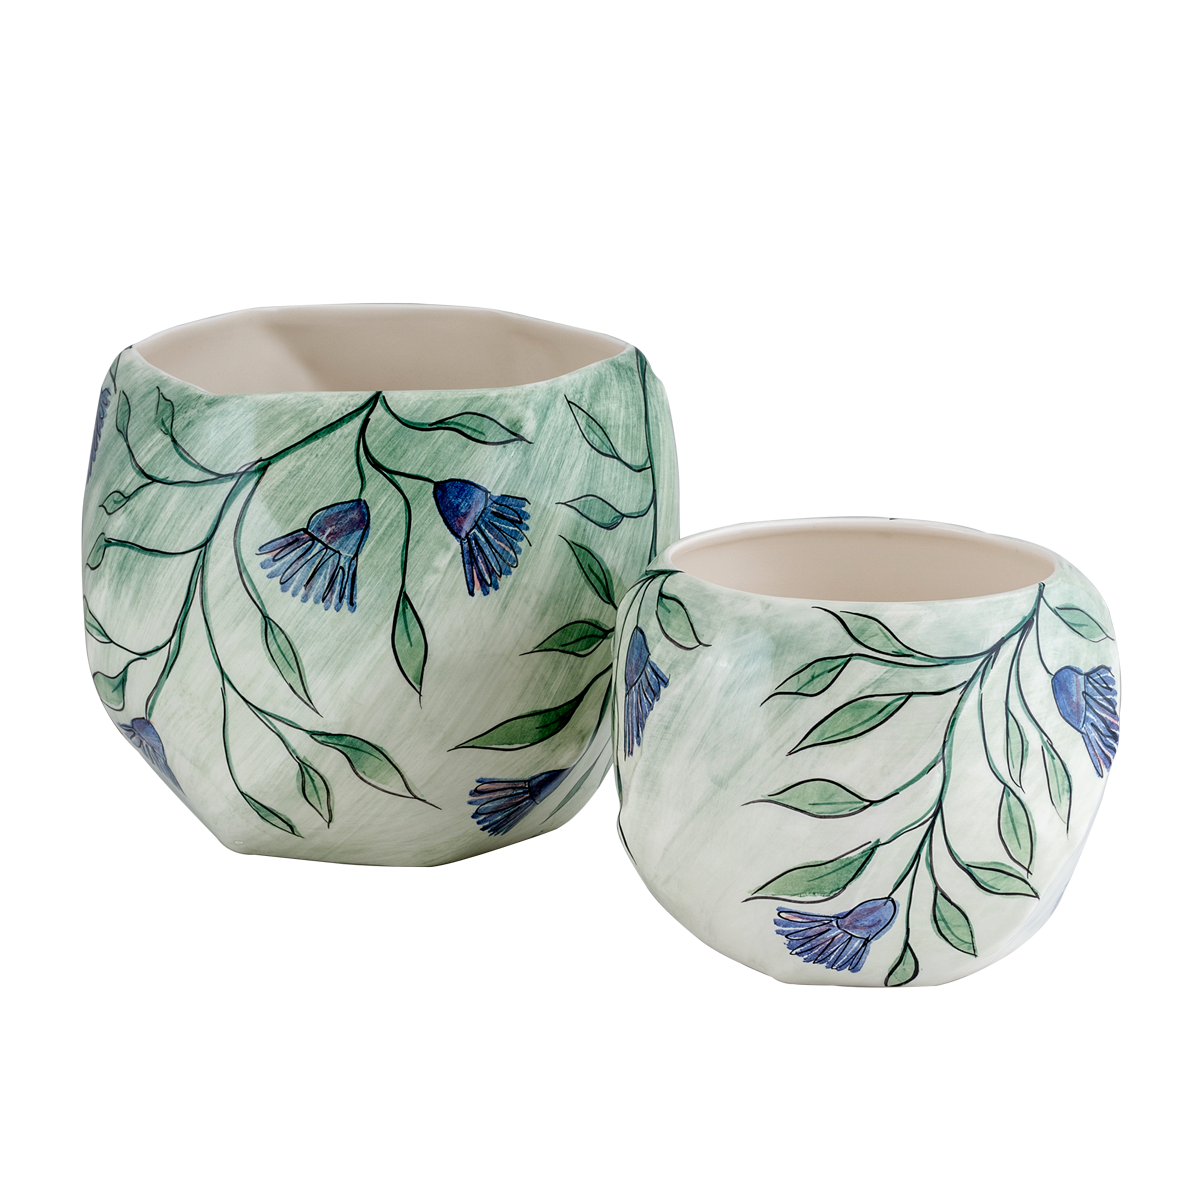 Artichoke Ceramic Vase